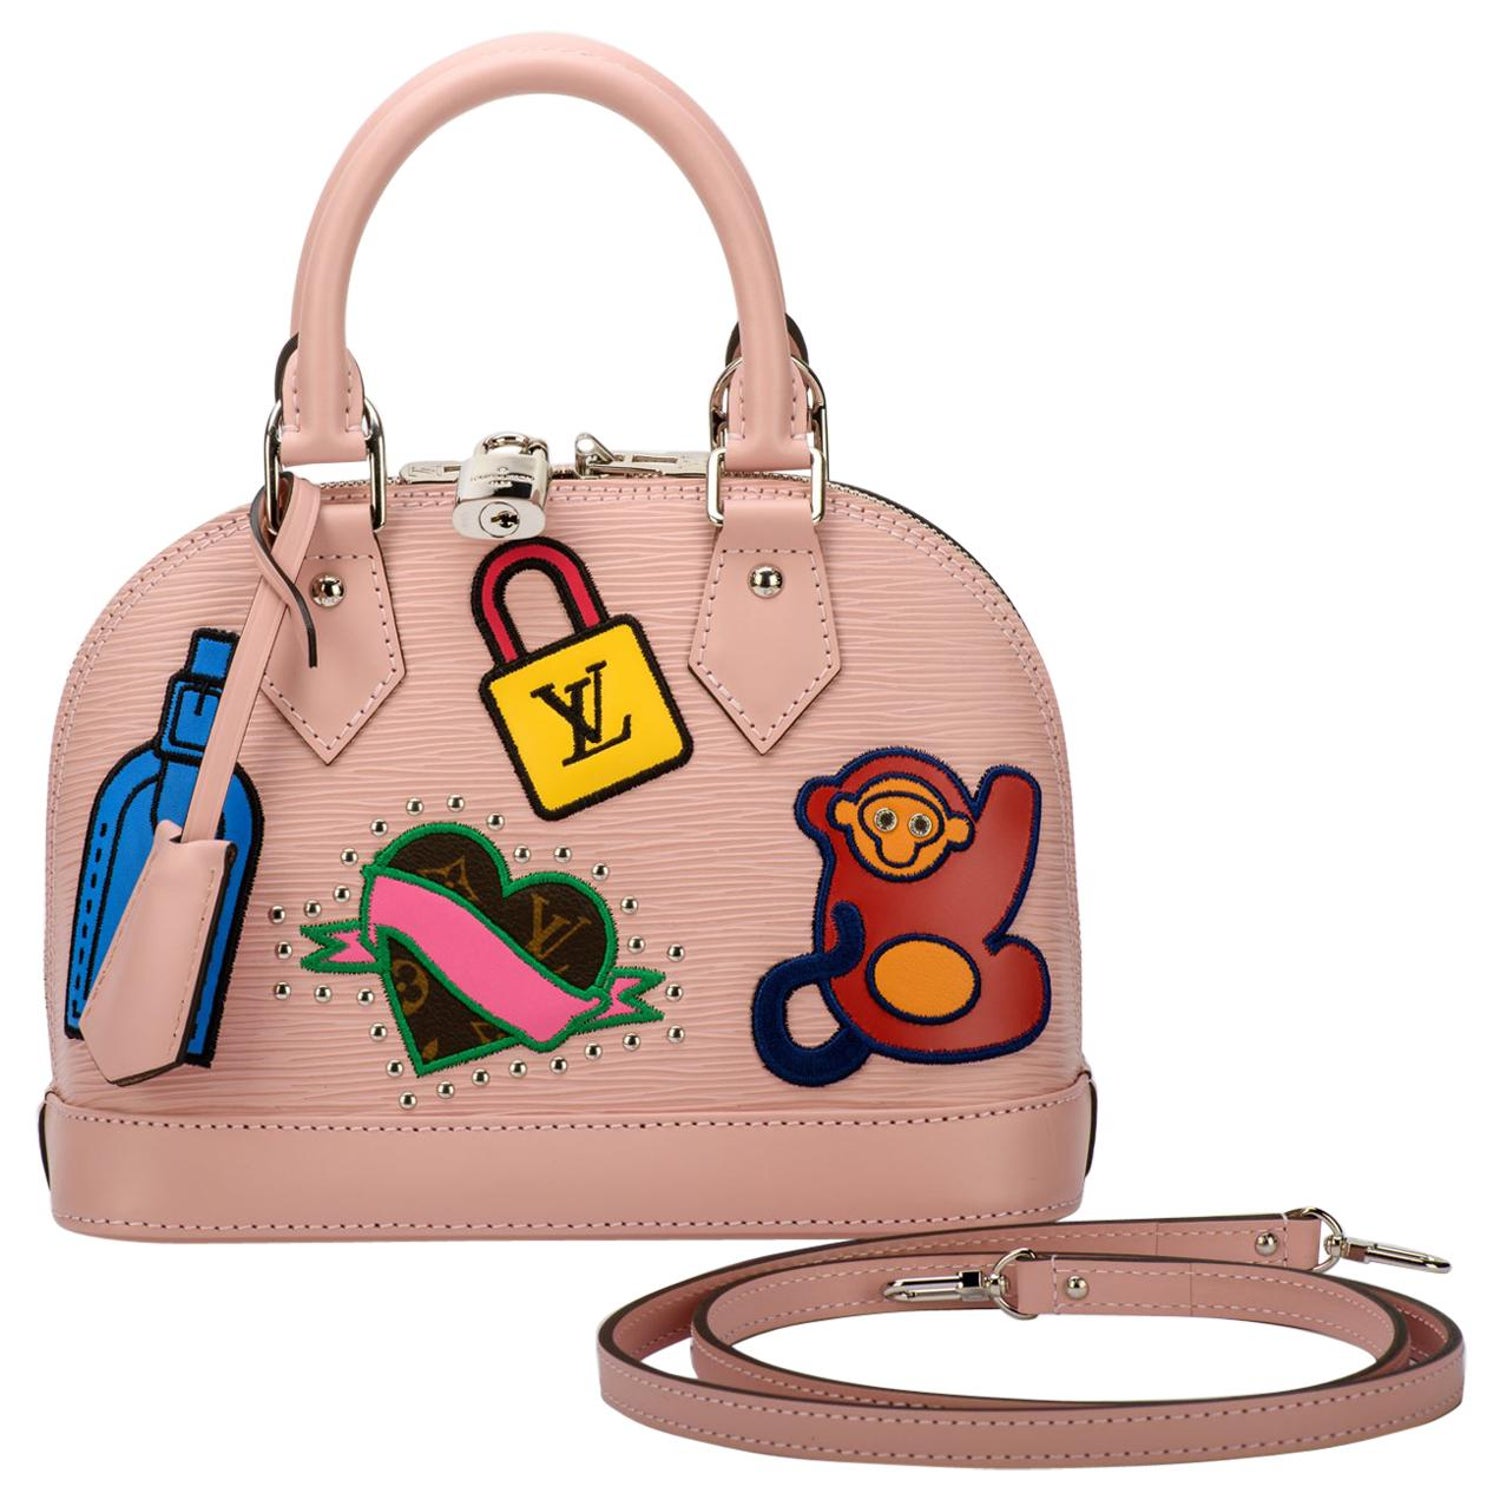 Louis Vuitton - Alma BB - Hot Pink Epi Leather - SHW - 2020